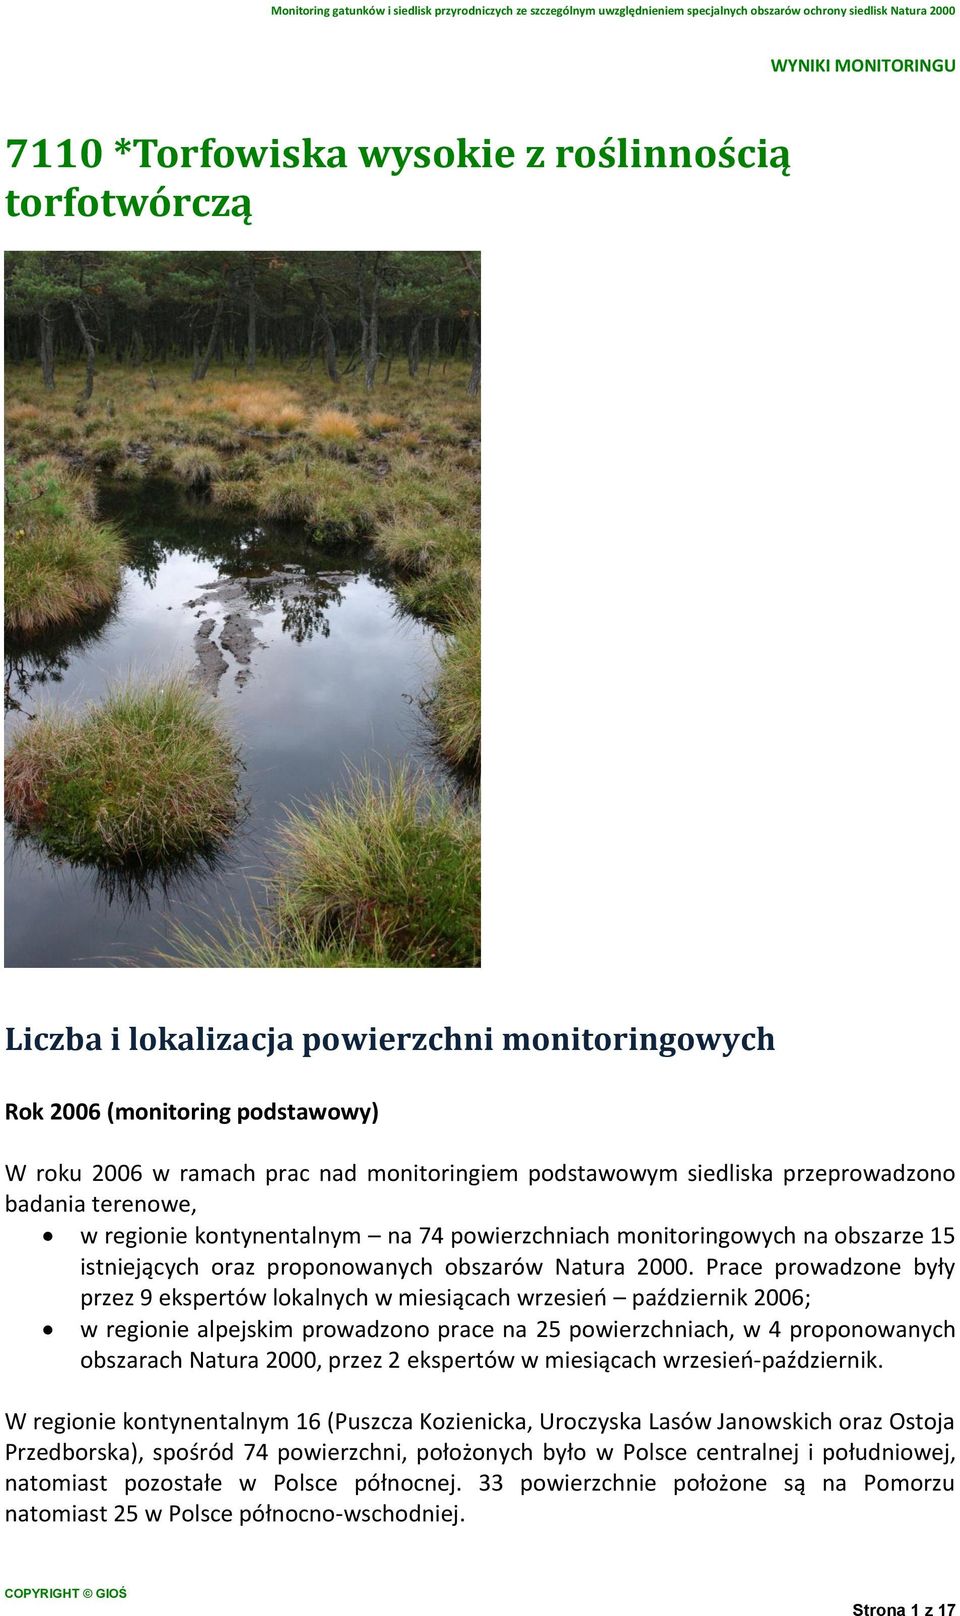 Prace prowadzone były przez 9 ekspertów lokalnych w miesiącach wrzesień październik 2006; w regionie alpejskim prowadzono prace na 25 powierzchniach, w 4 proponowanych obszarach Natura 2000, przez 2